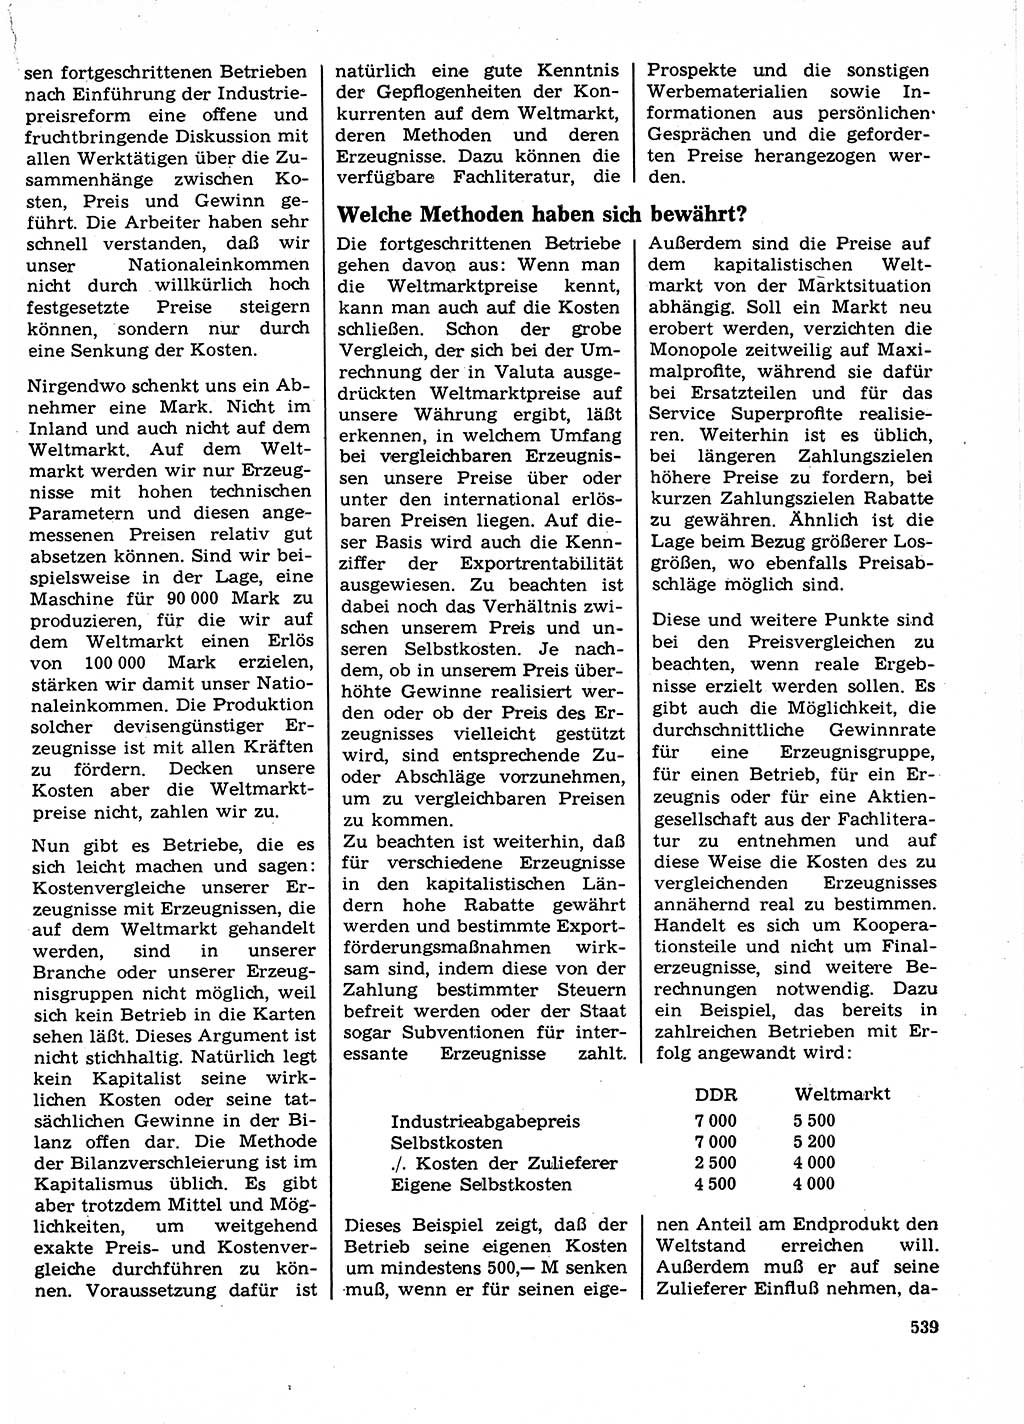 Neuer Weg (NW), Organ des Zentralkomitees (ZK) der SED (Sozialistische Einheitspartei Deutschlands) für Fragen des Parteilebens, 23. Jahrgang [Deutsche Demokratische Republik (DDR)] 1968, Seite 539 (NW ZK SED DDR 1968, S. 539)